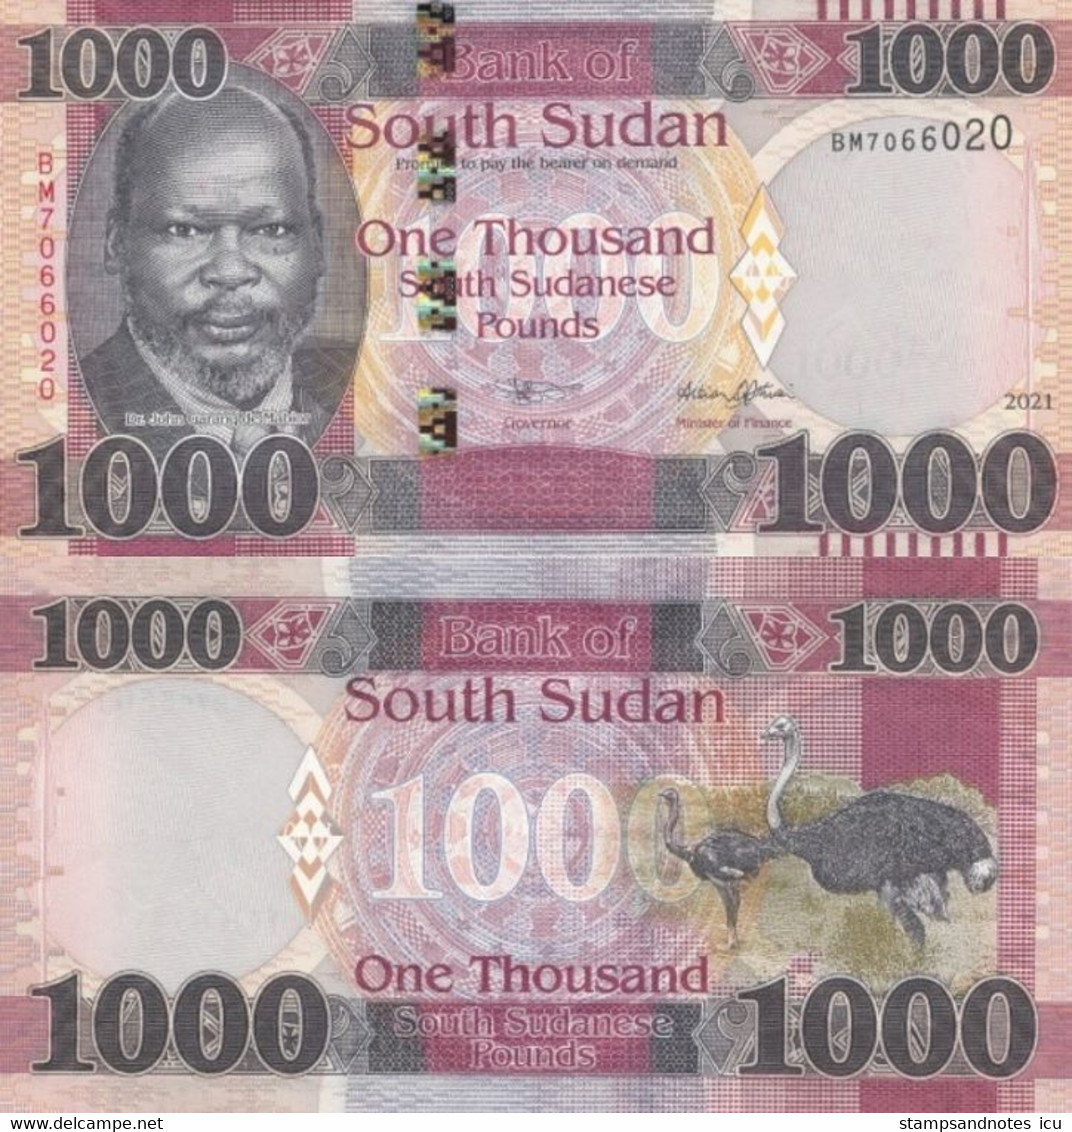 SOUTH SUDAN 1000 Pounds 2021 P W17 UNC - South Sudan